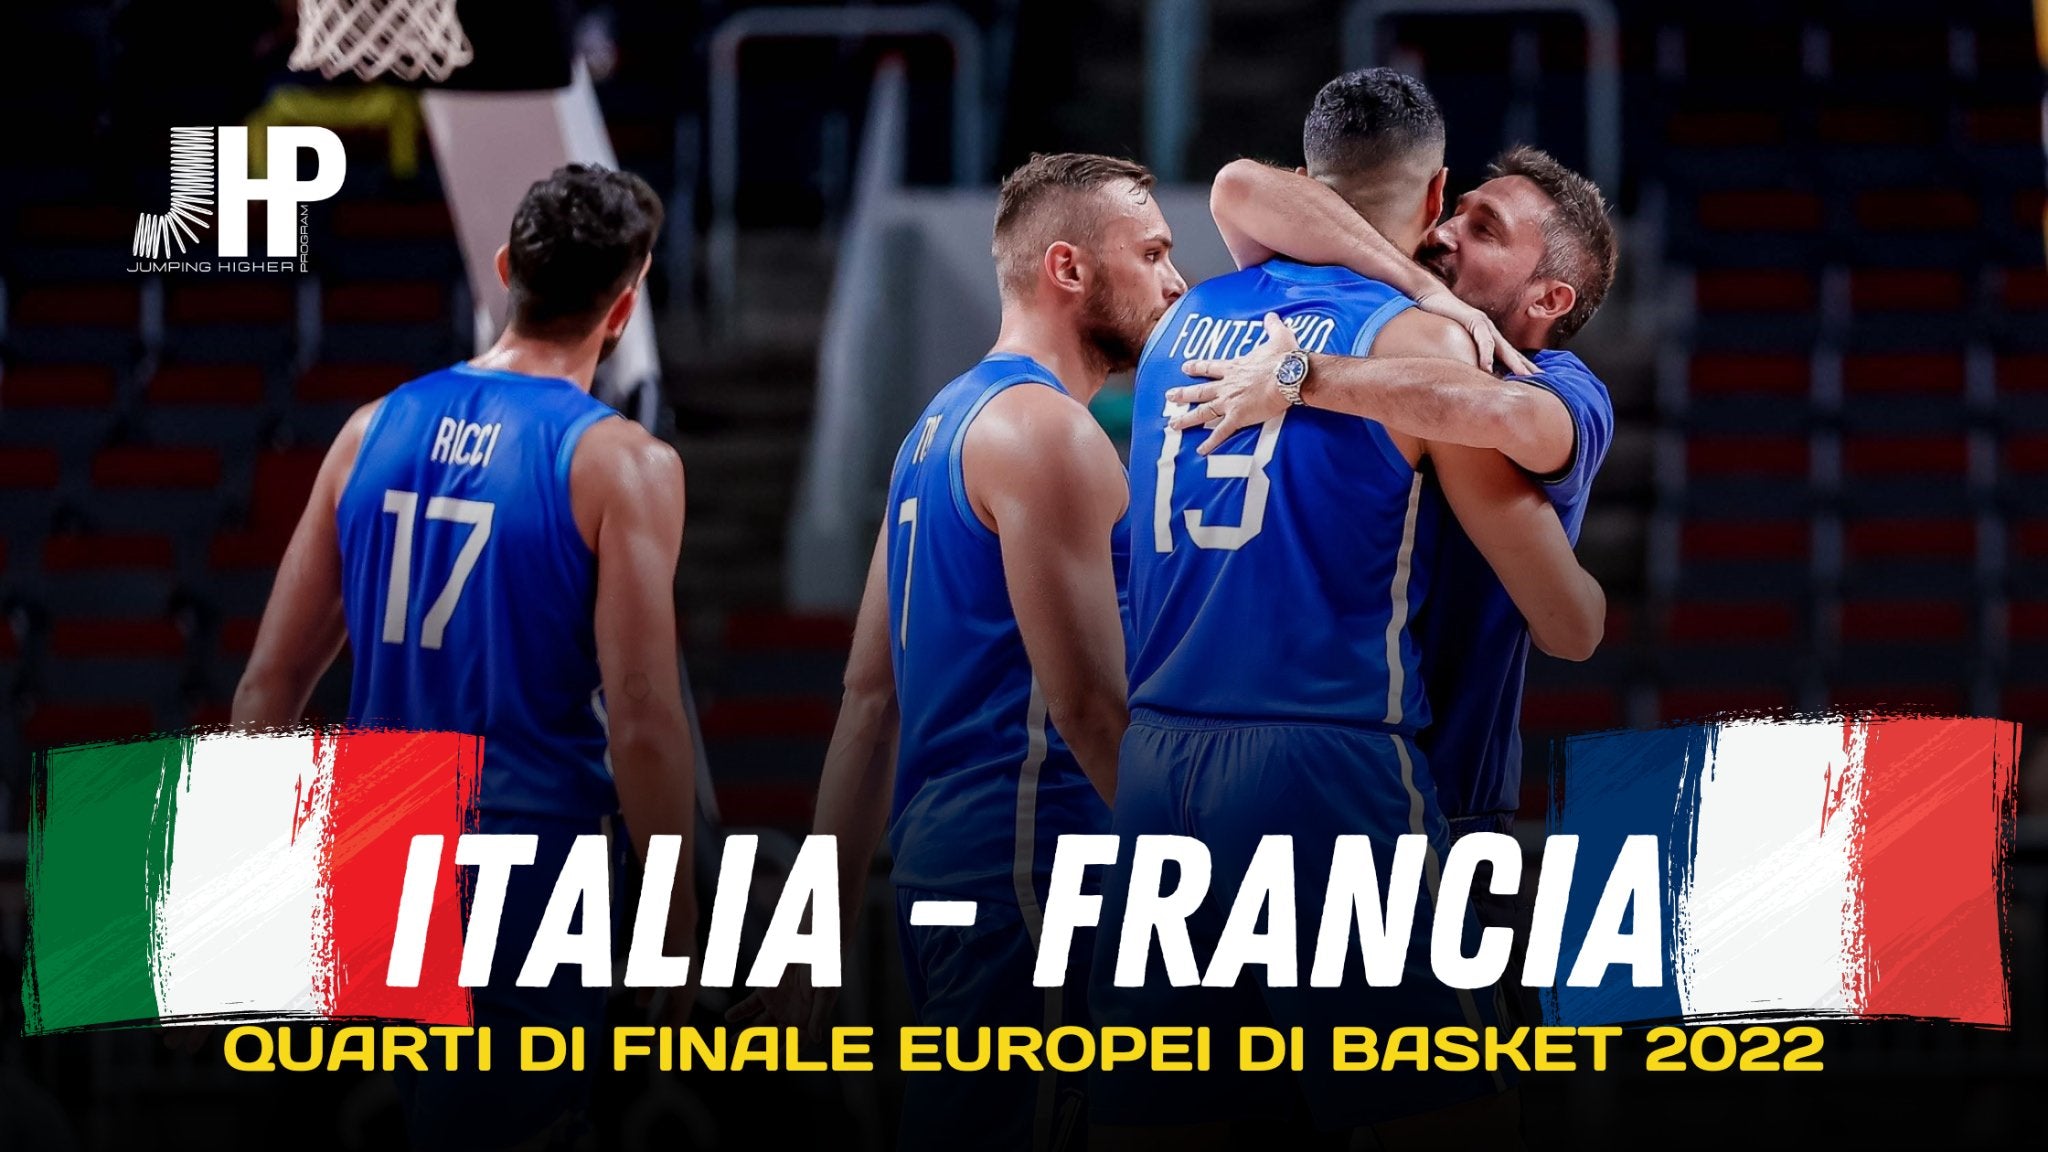 Europei di basket 2022: tutte le info per la partita ITALIA - FRANCIA - JHP® Jump Higher Program